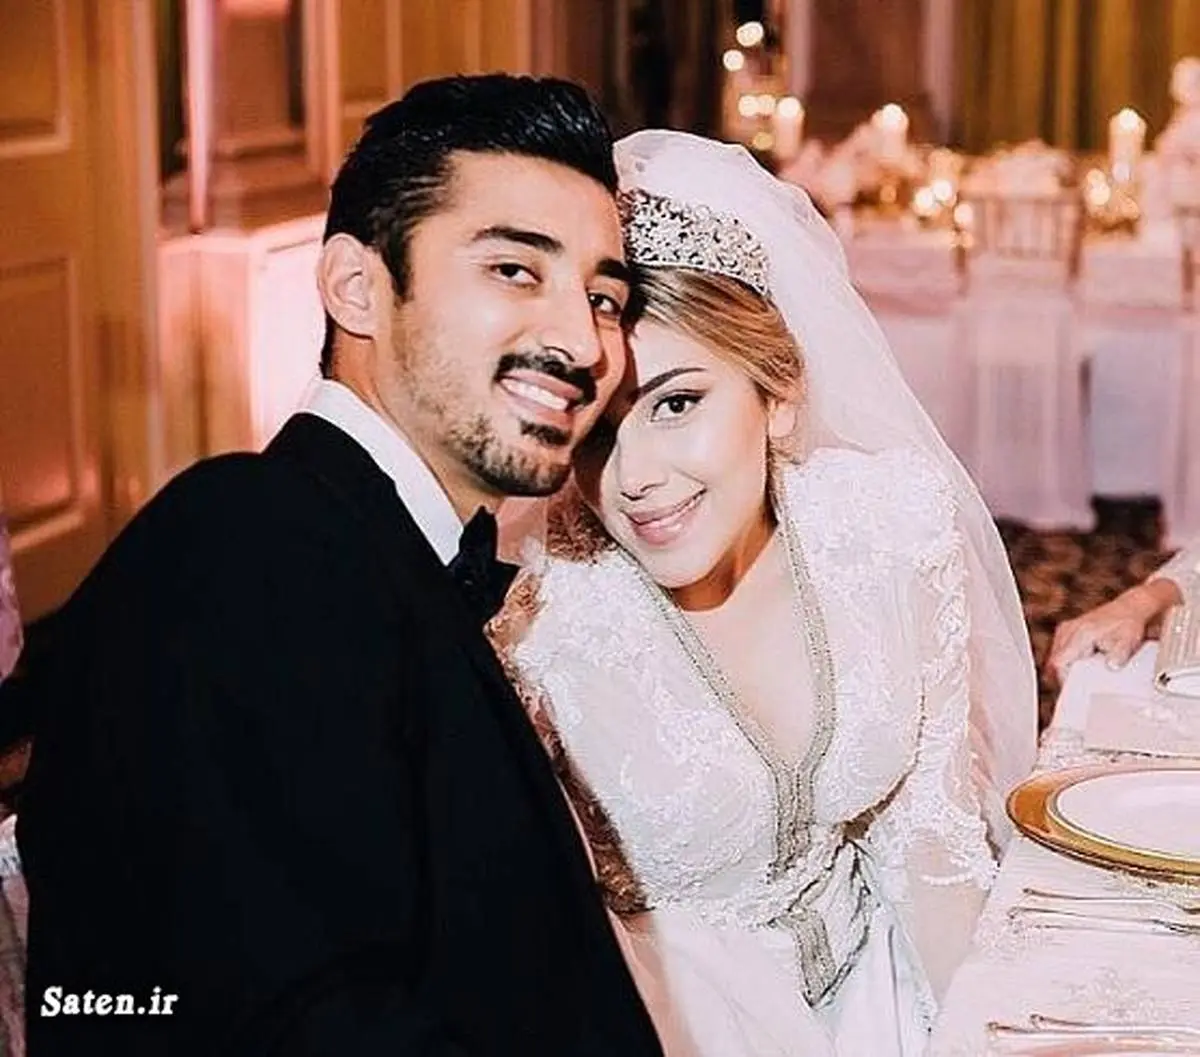 تصاویر جنجالی و دیده نشده از عروسی رضا قوچان نژاد + بیوگرافی و تصاویر